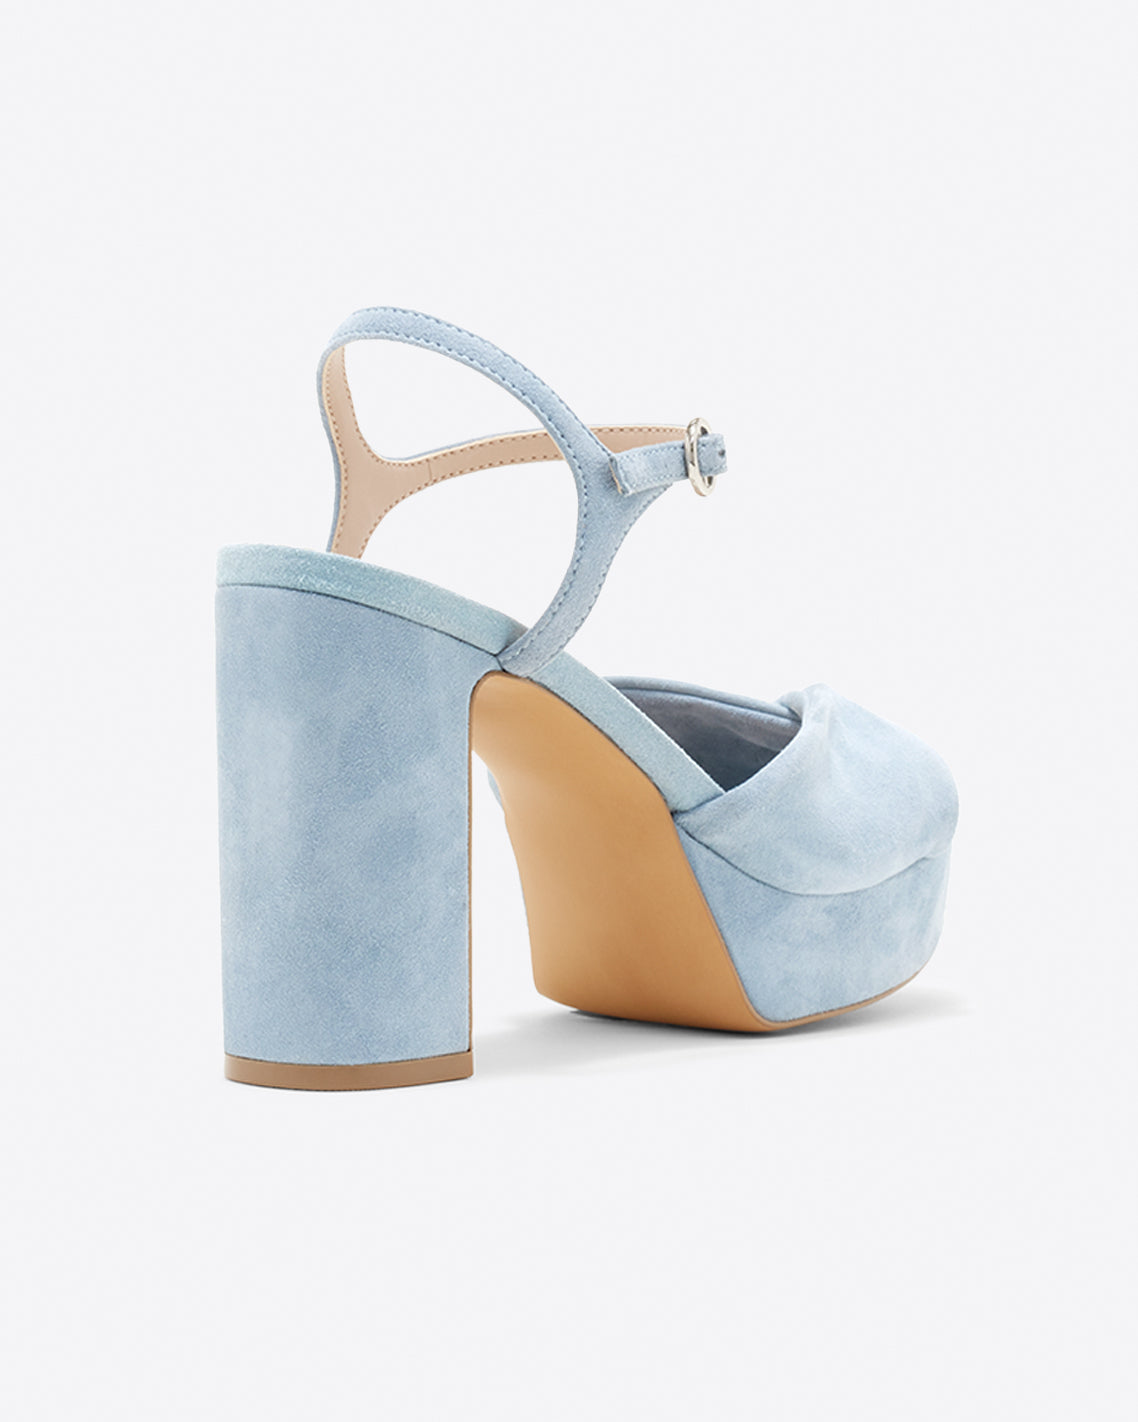 Women´s platform sandals in blue metallic leather | LODI women´s shoes  online.